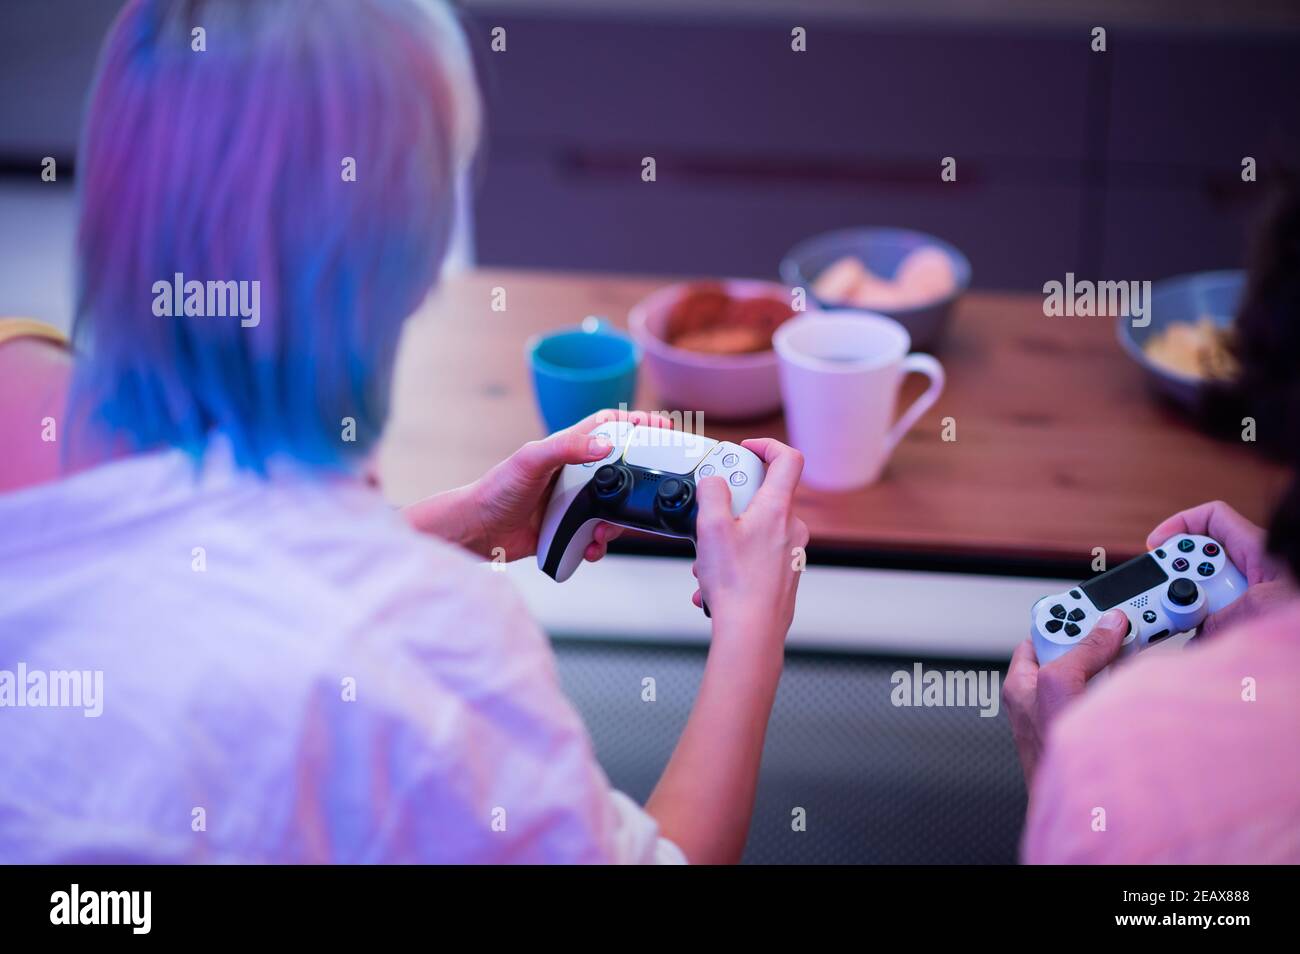 Portrait von emotionalen jungen Paar spielen Videospiel zu Hause. Stockfoto